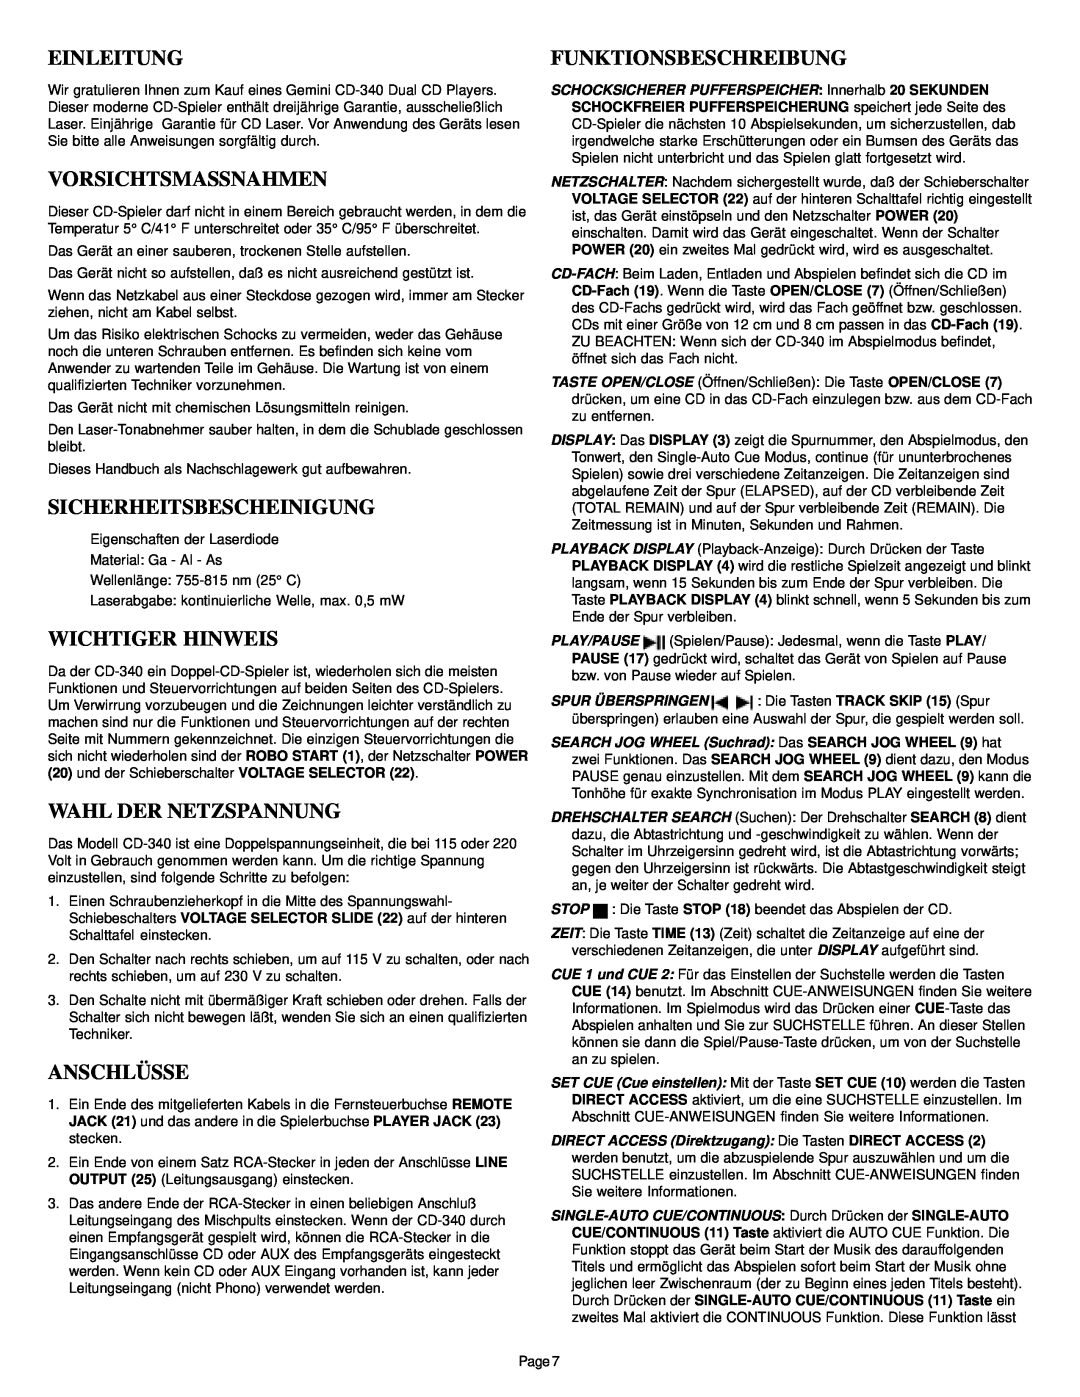 Gemini CD-340 manual Einleitung, Vorsichtsmassnahmen, Sicherheitsbescheinigung, Wichtiger Hinweis, Wahl Der Netzspannung 